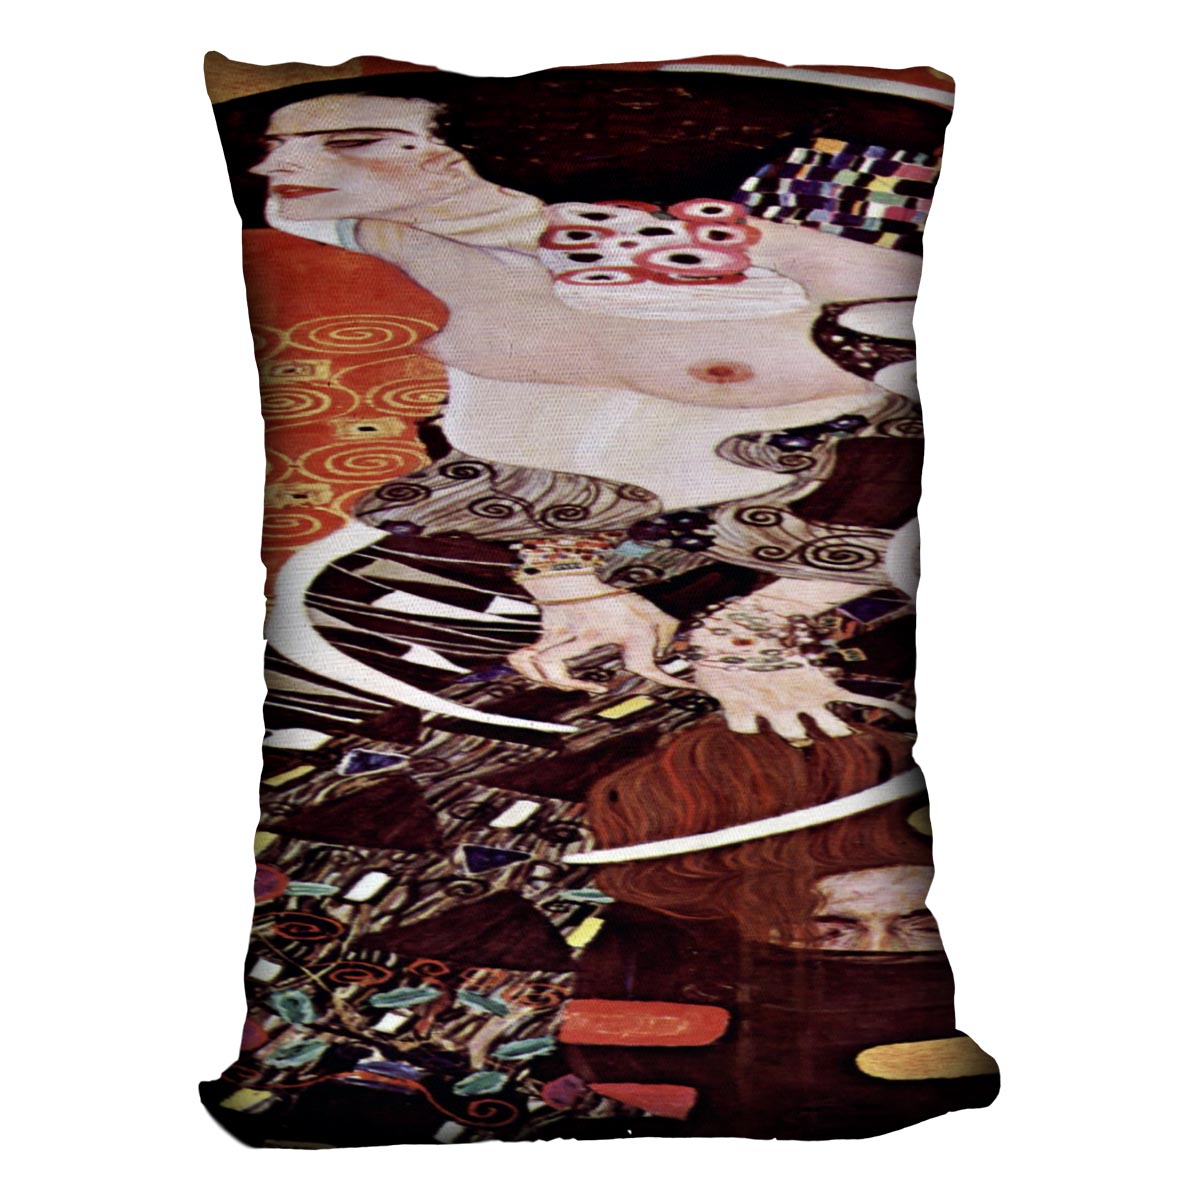 Judith II by Klimt Cushion